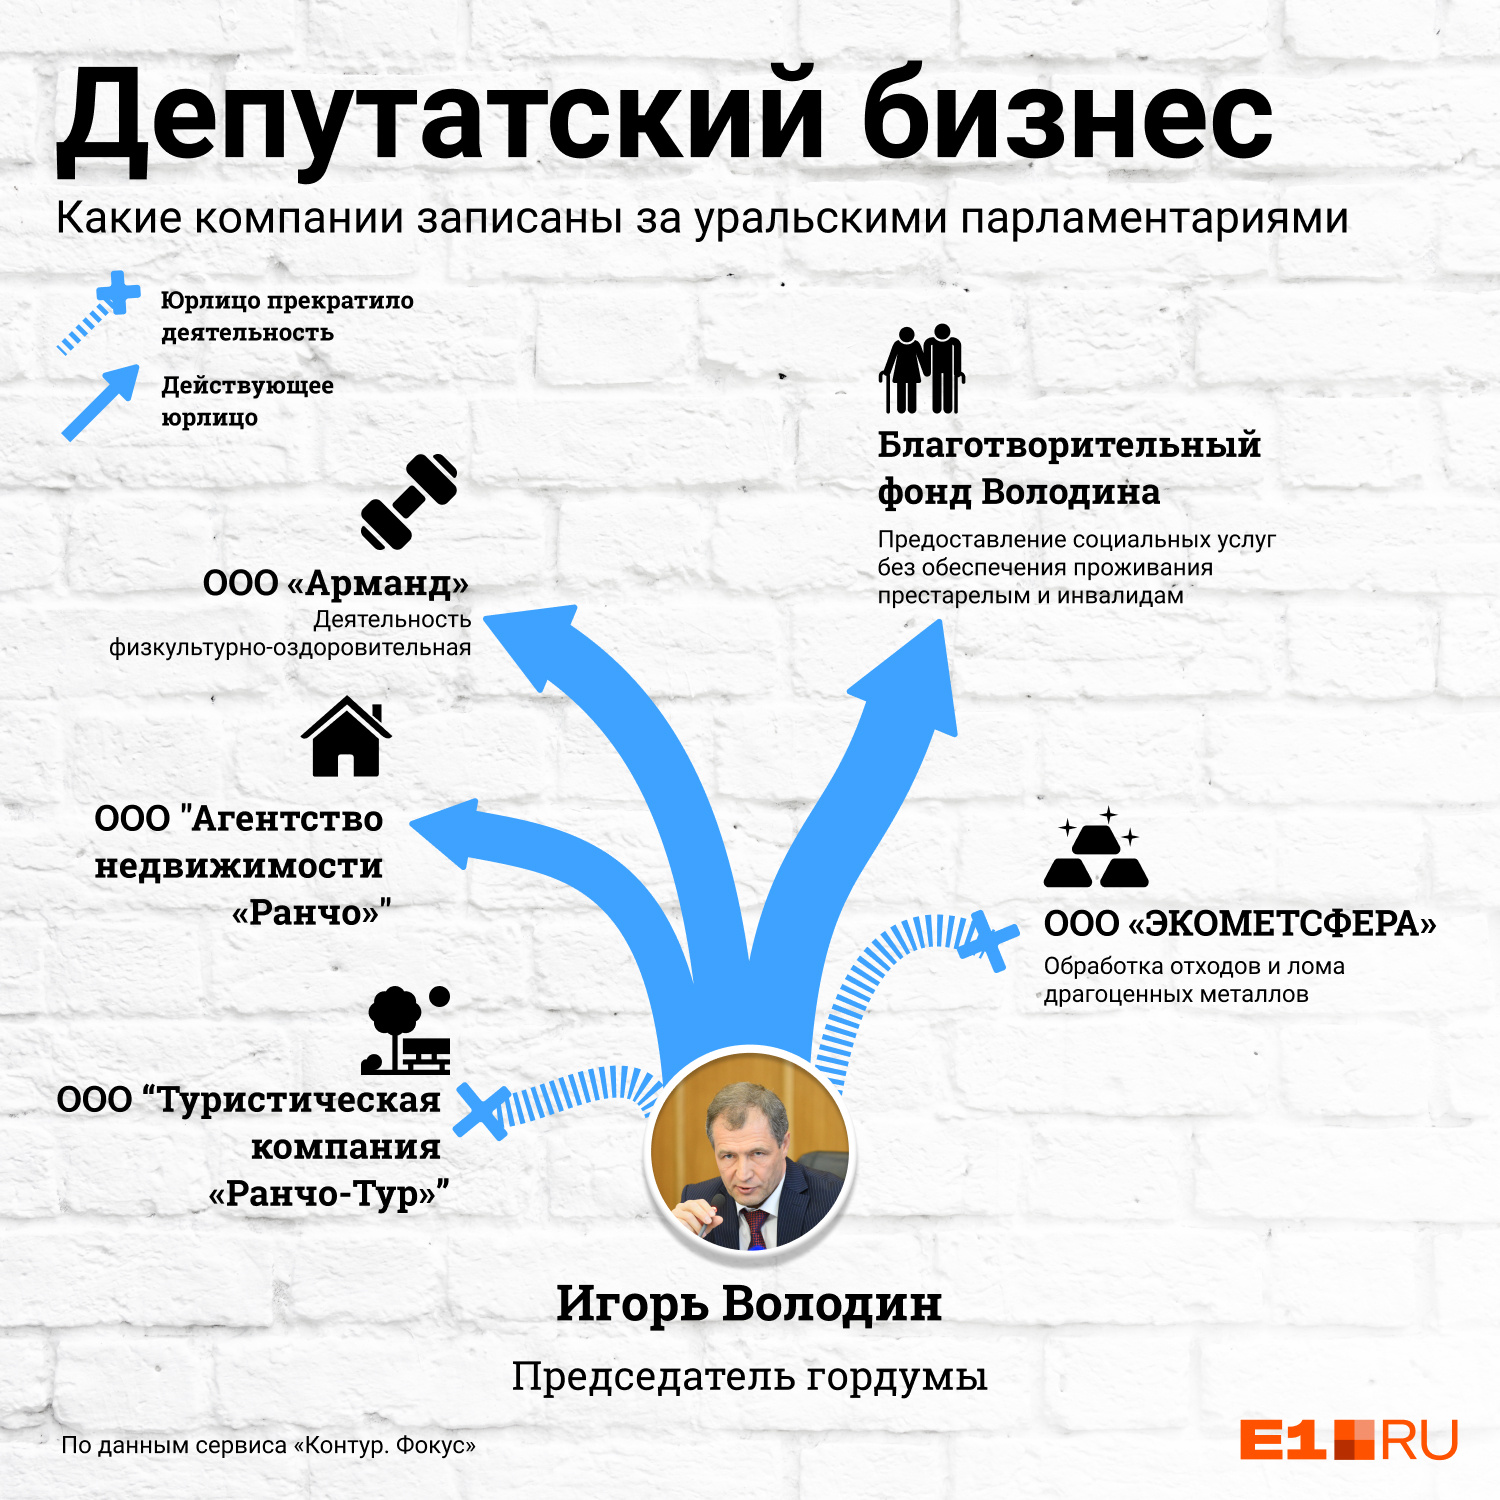 Игорь Володин — бывший силовик, он не успел создать много компаний